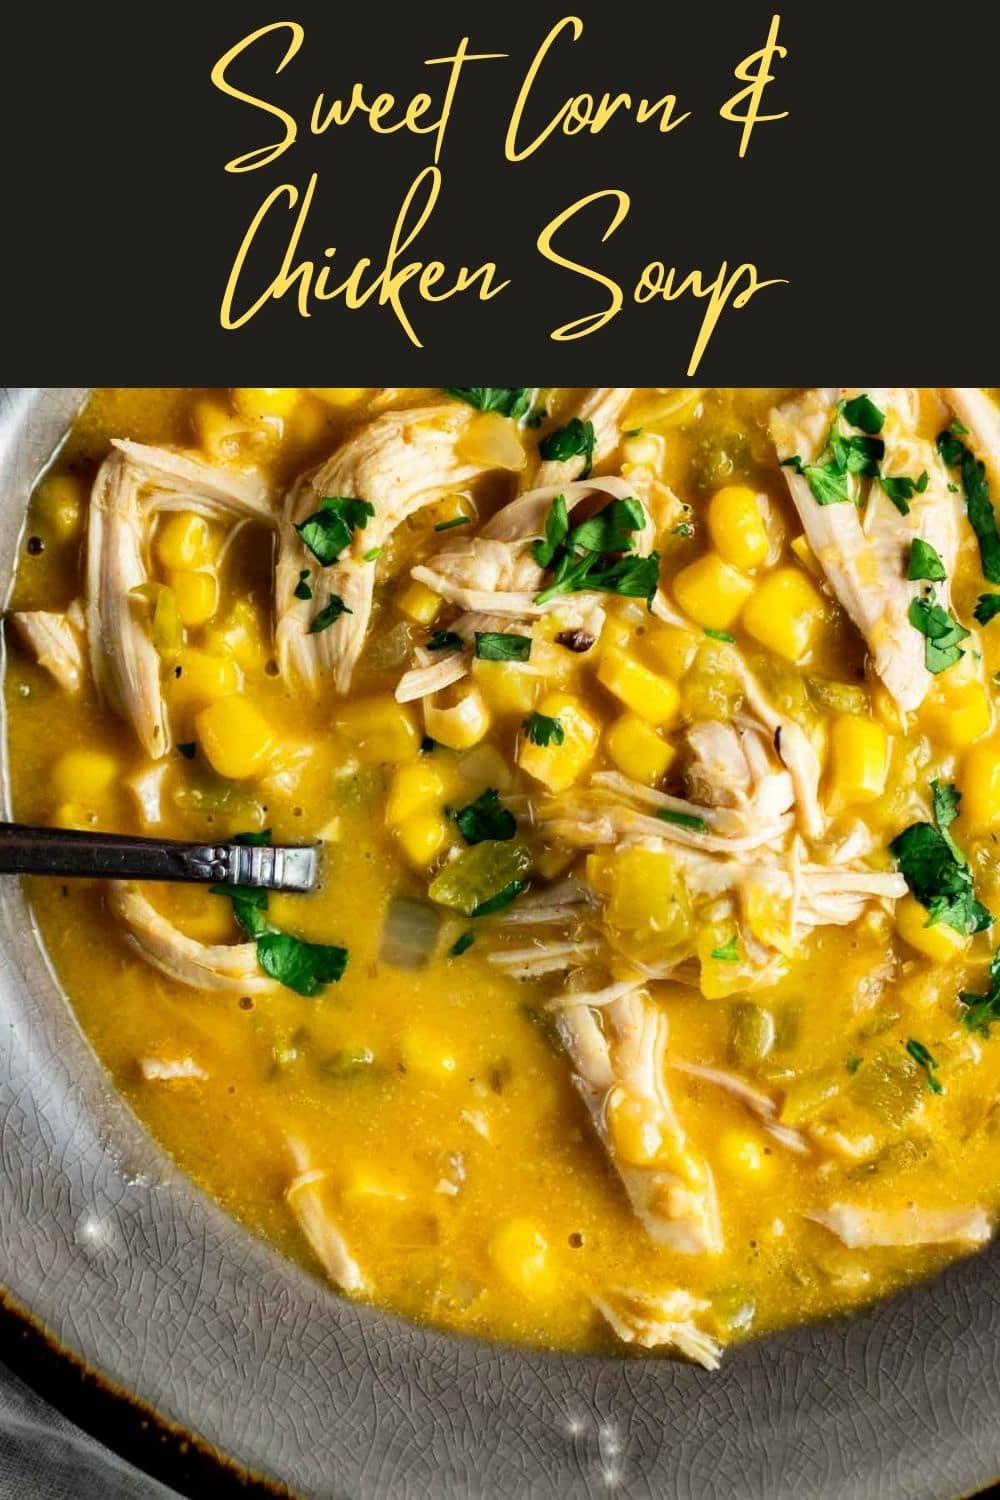 Sweet Corn & Chicken Soup